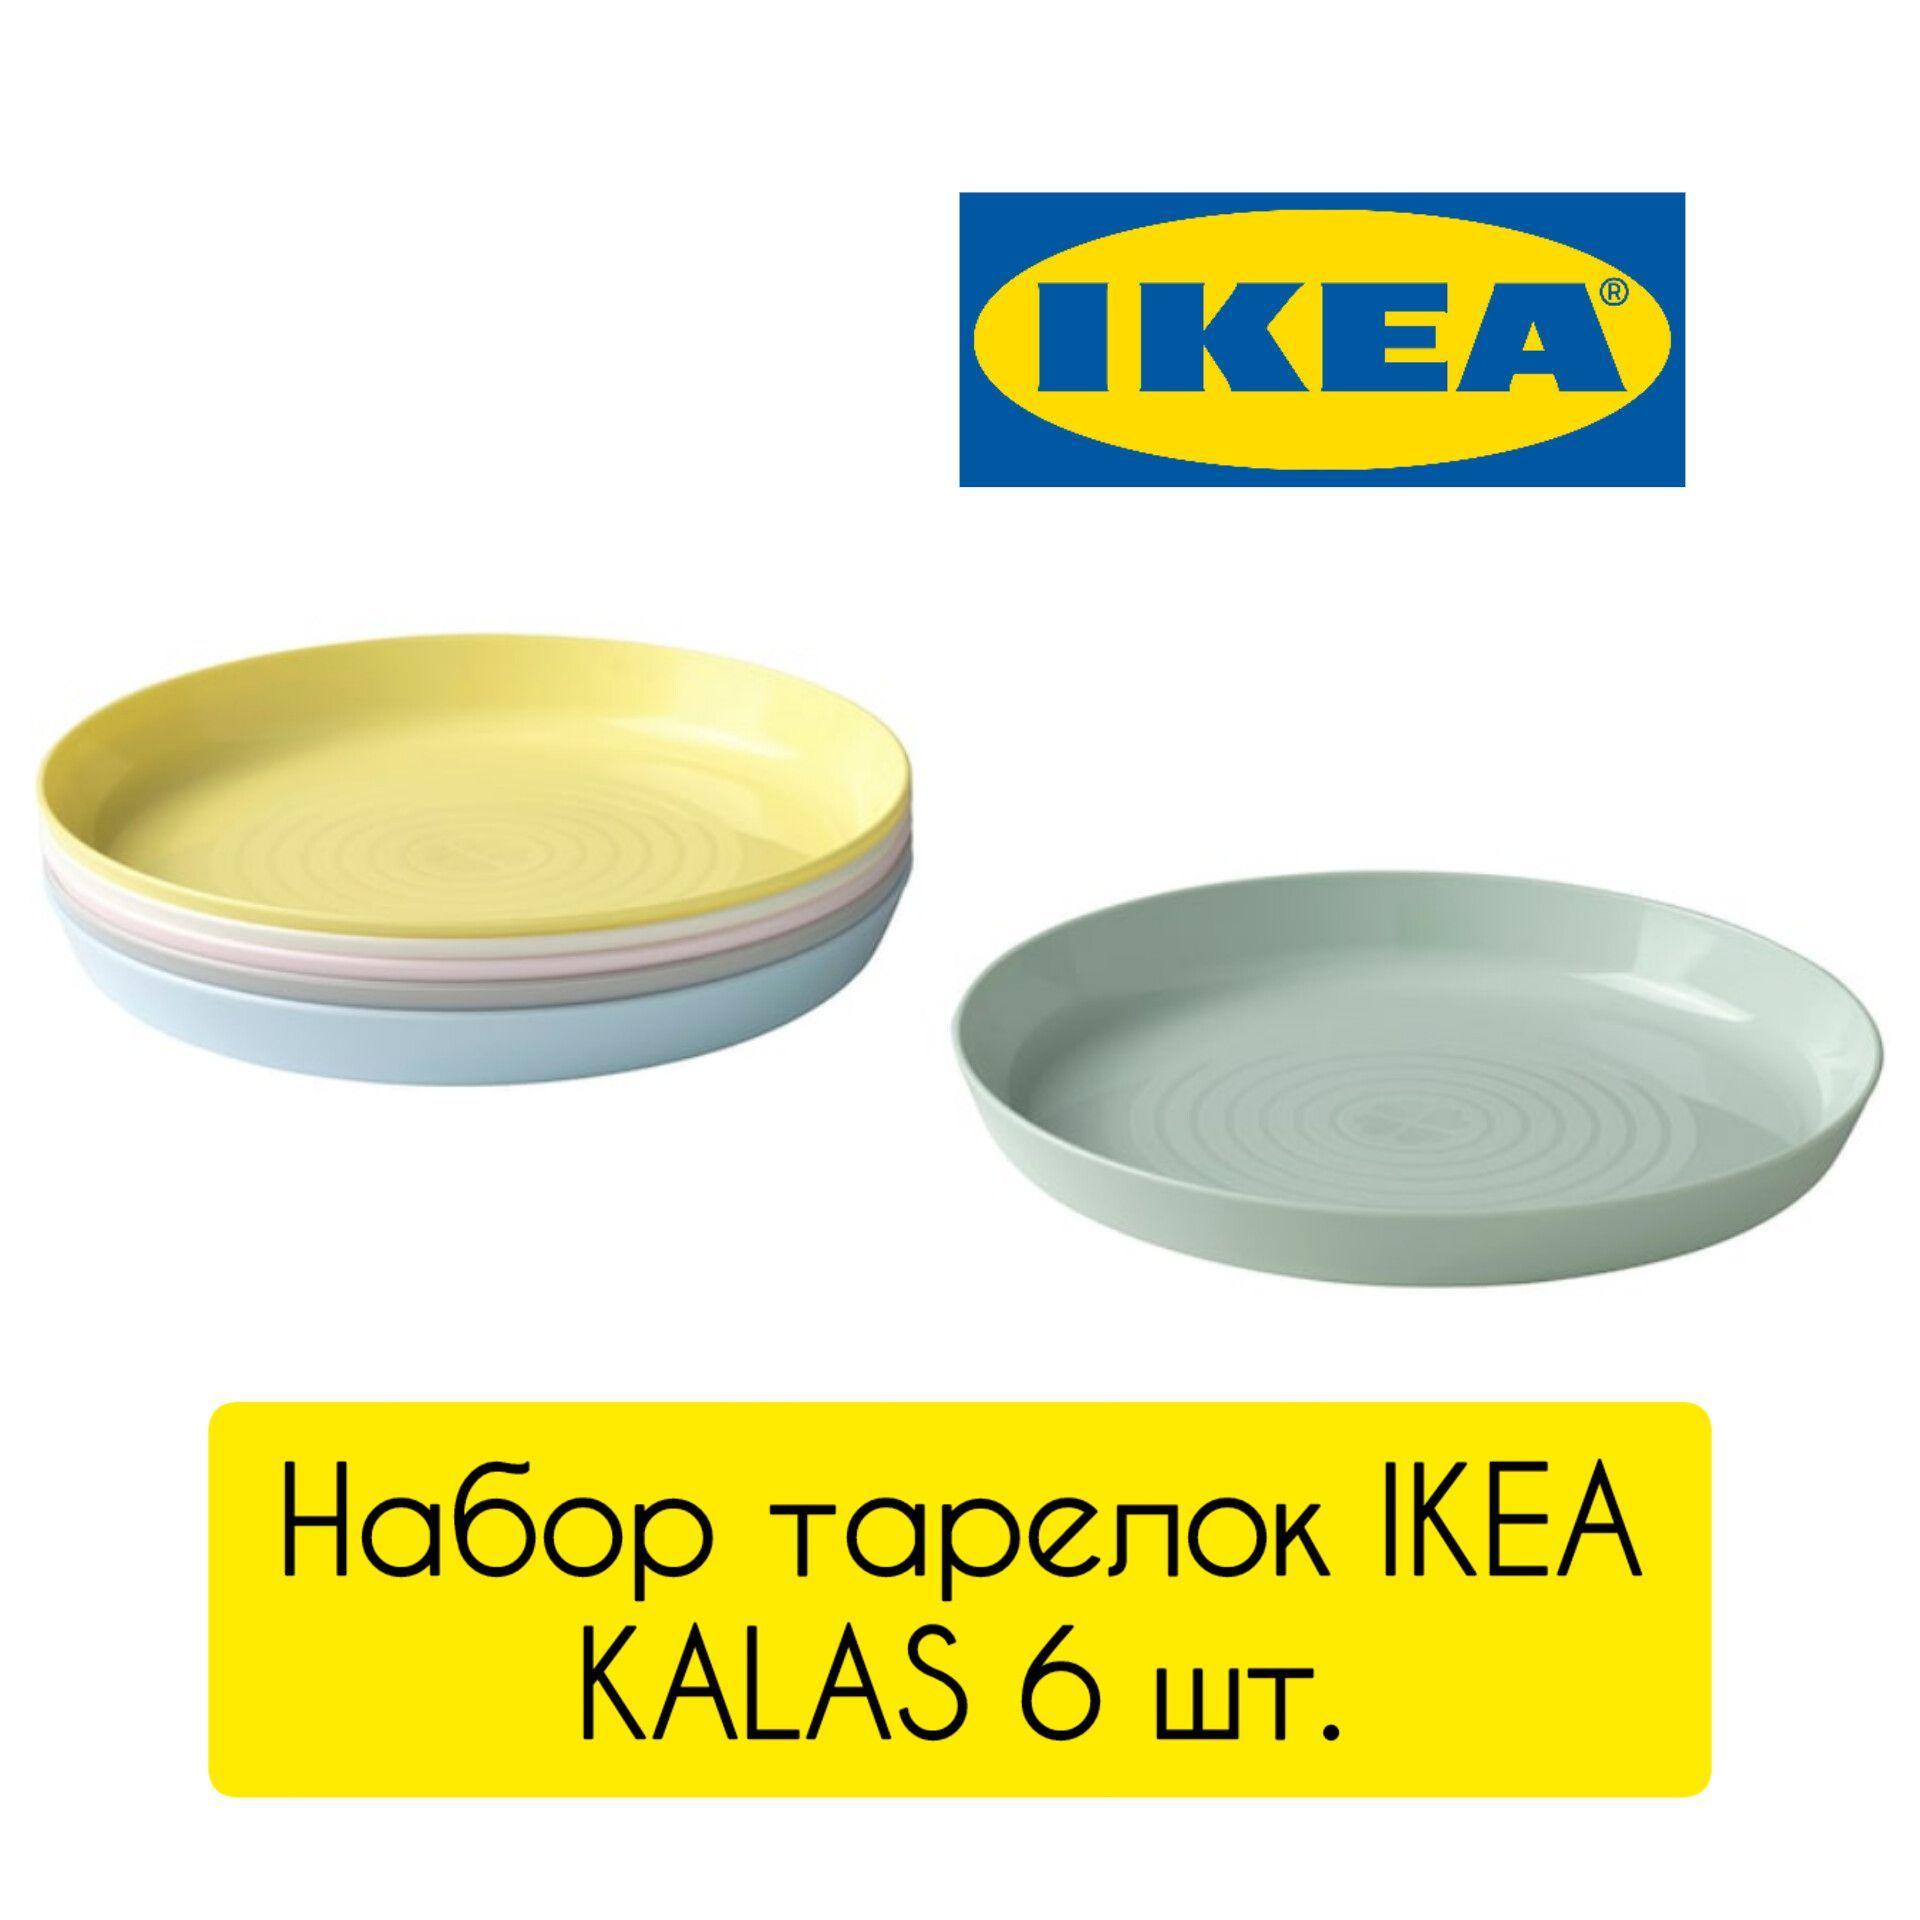 Набор тарелок Икеа Калас, 6 шт., пластиковый, разноцветный Ikea Kalas